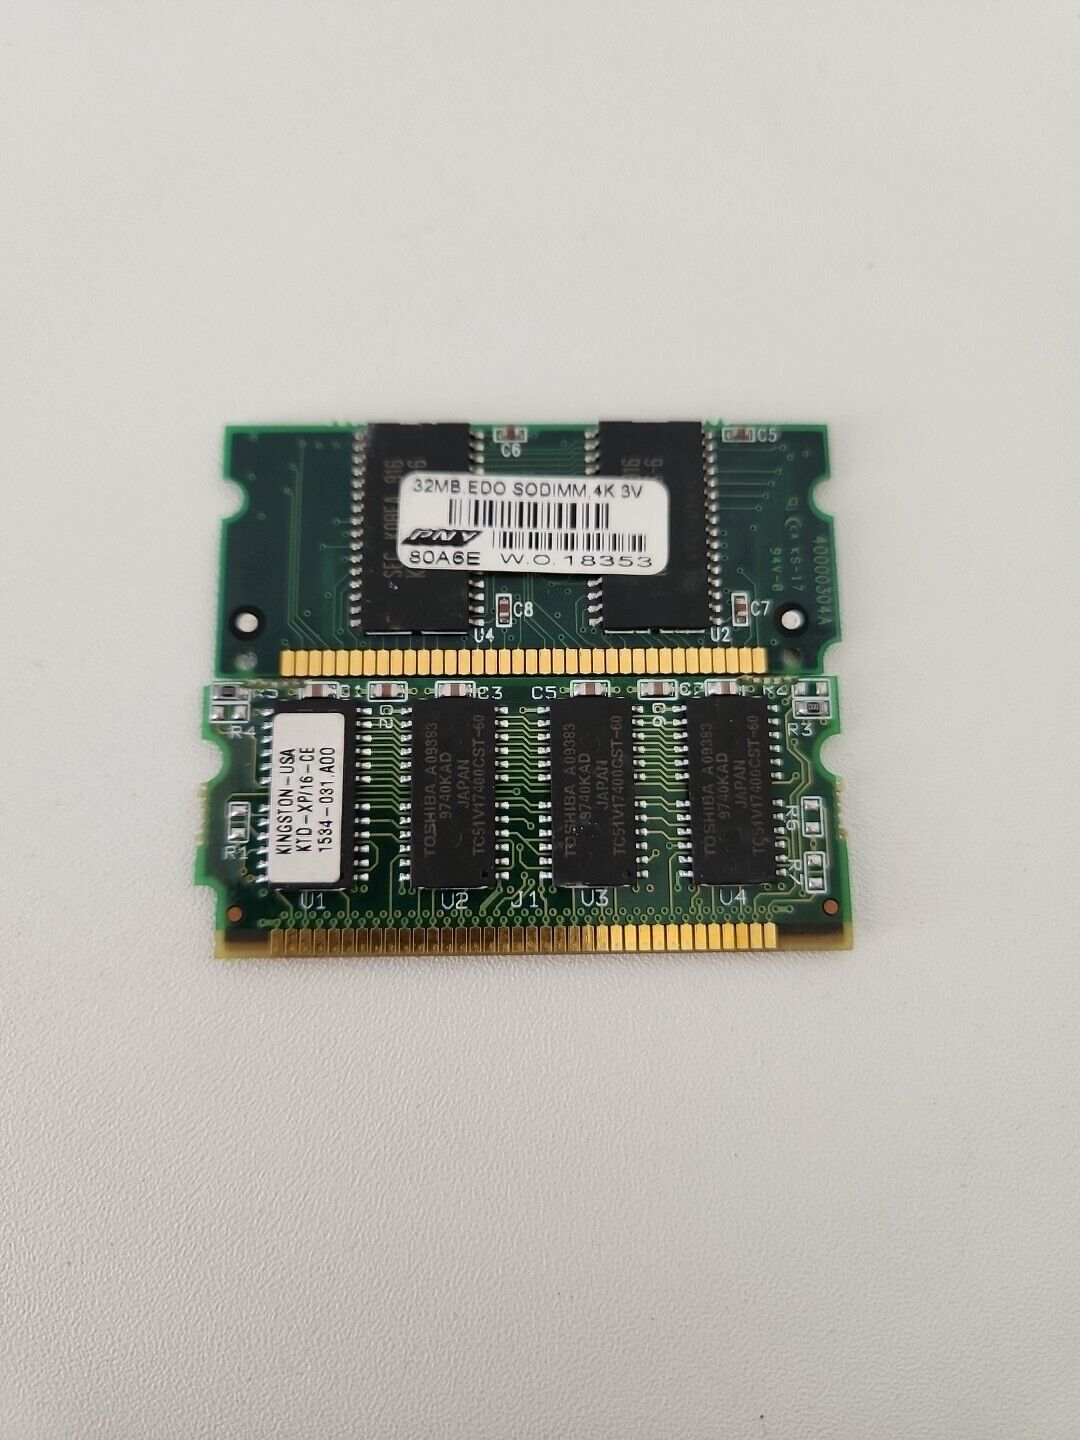 48MB (1x16MB) (1x32MB) PNY KINGSTON 72-pin EDO RAM SODIMM Memory Module 3.3V